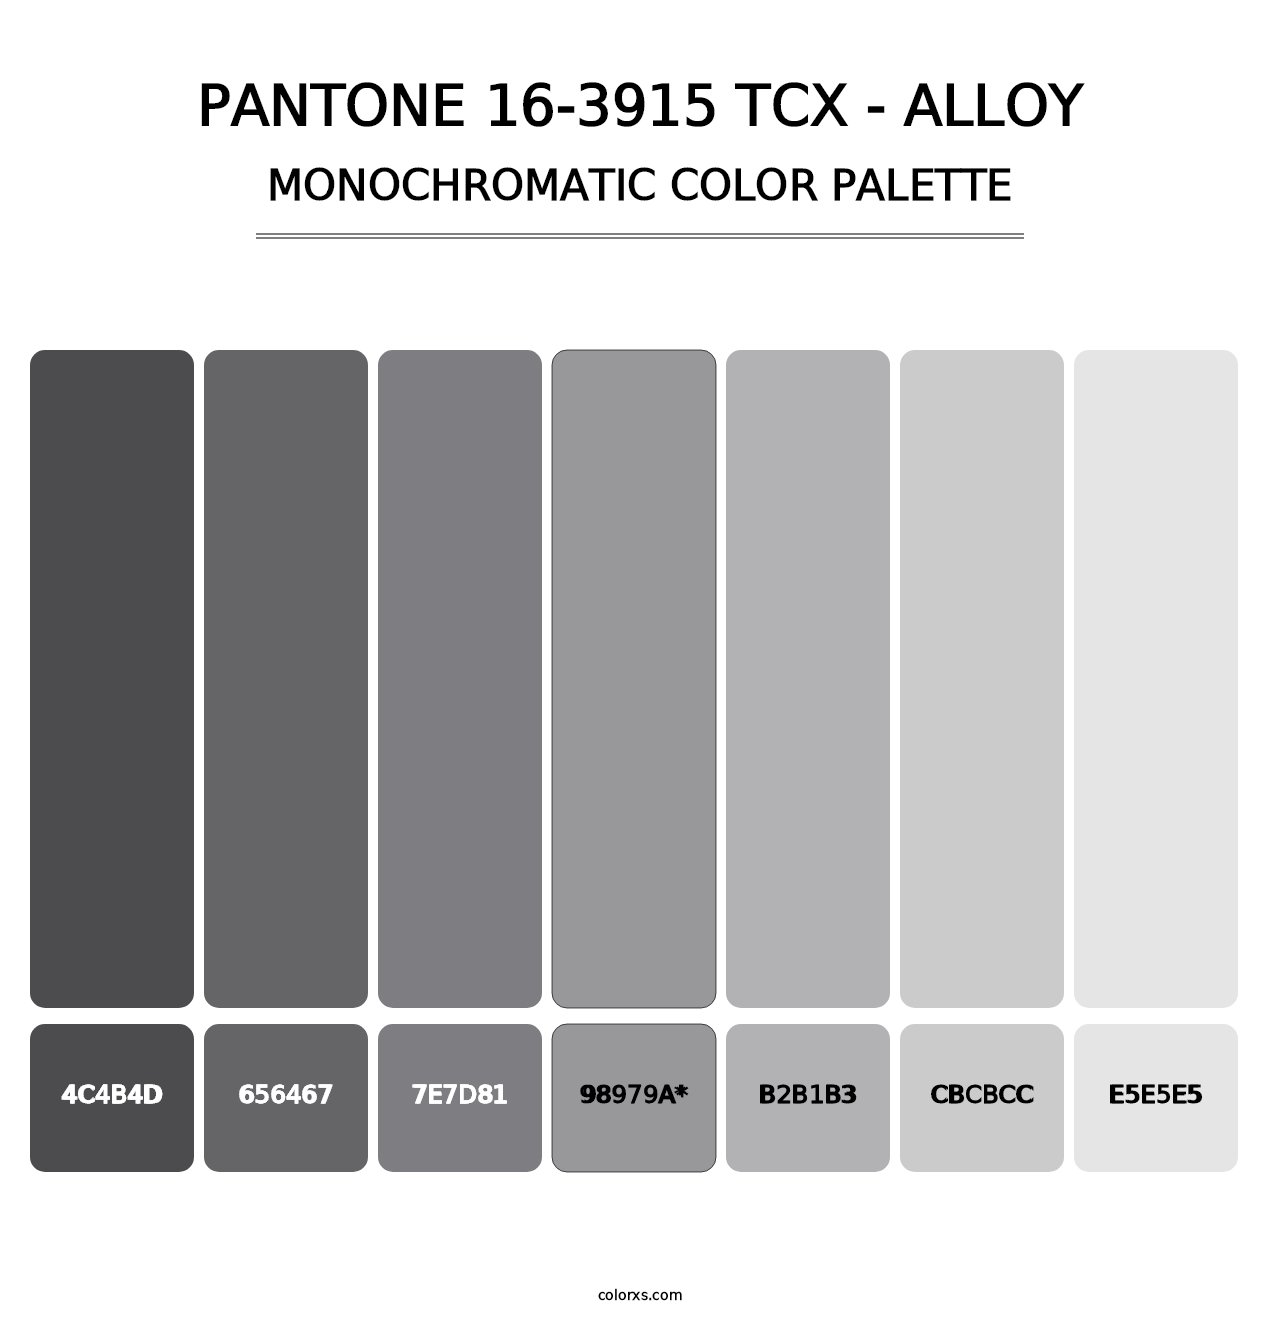 PANTONE 16-3915 TCX - Alloy - Monochromatic Color Palette